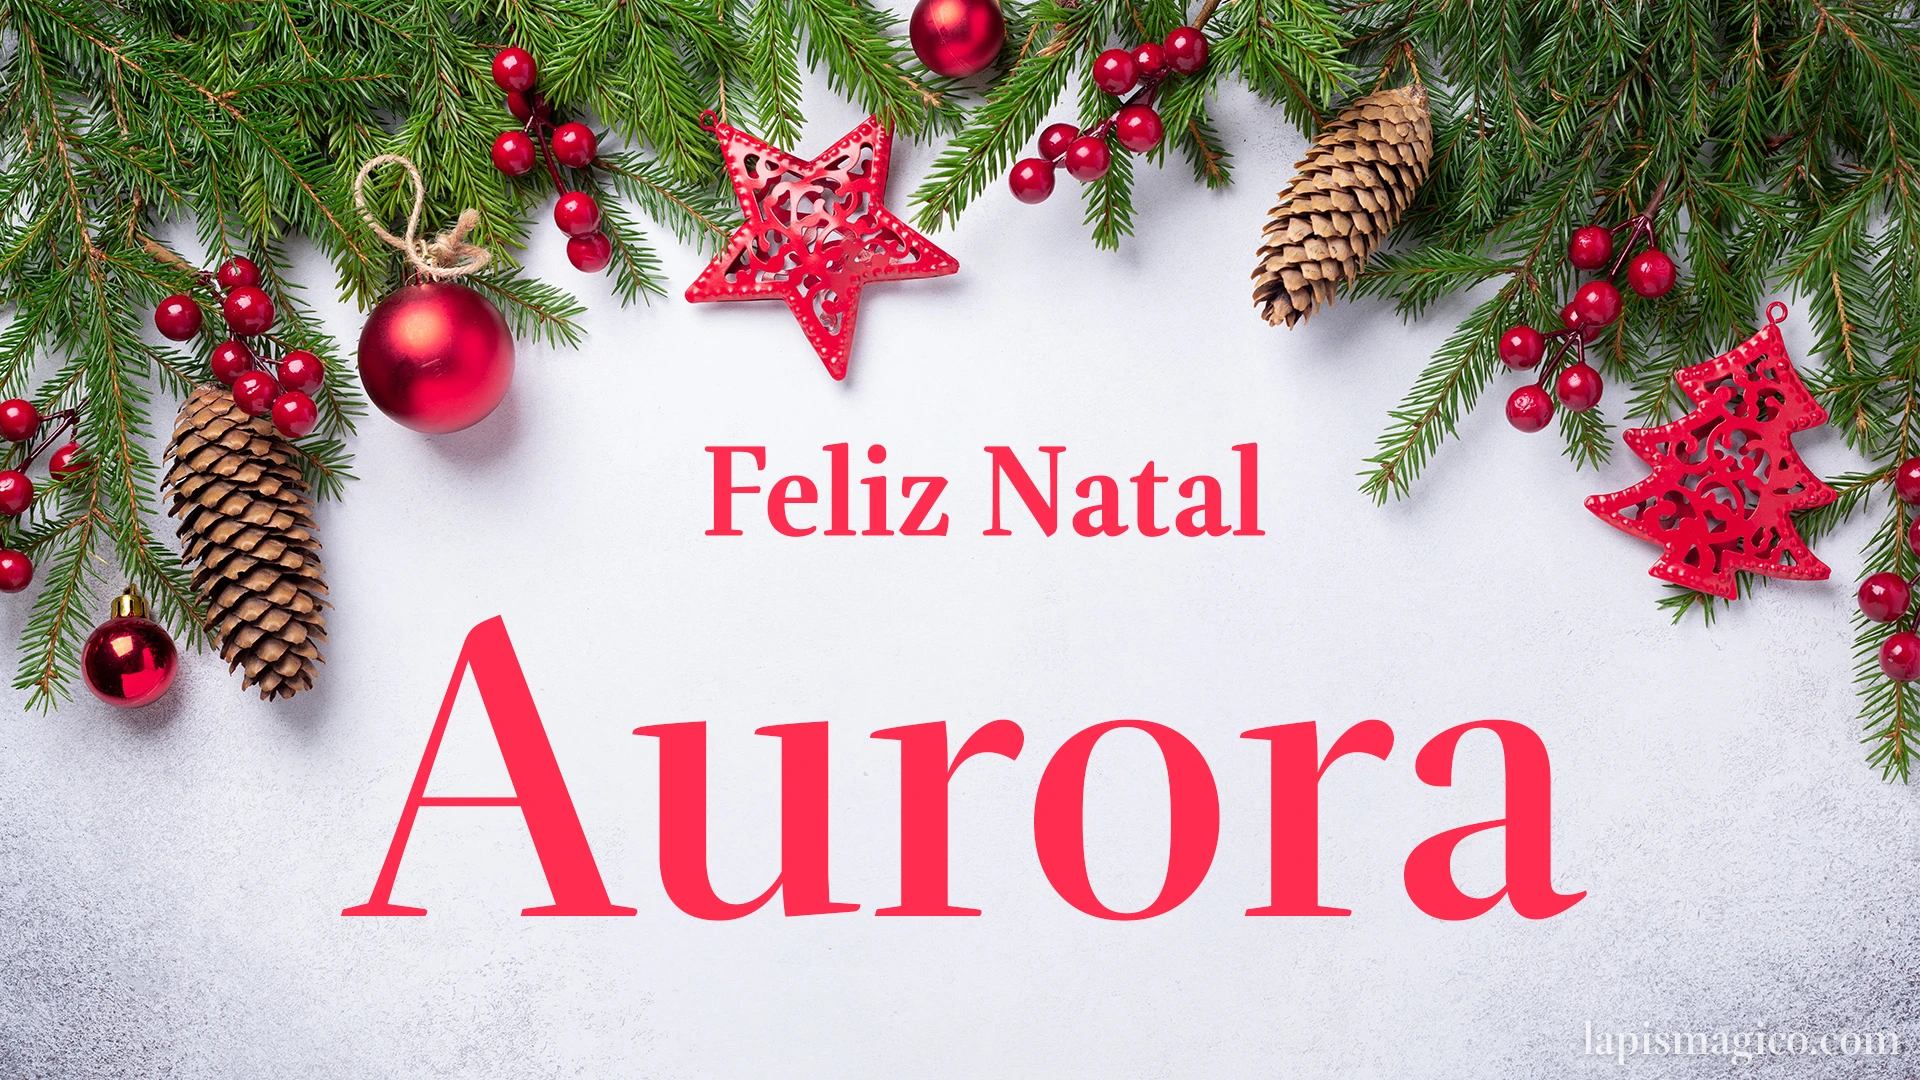 Oh Aurora, cinco postais de Feliz Natal Postal com o teu nome